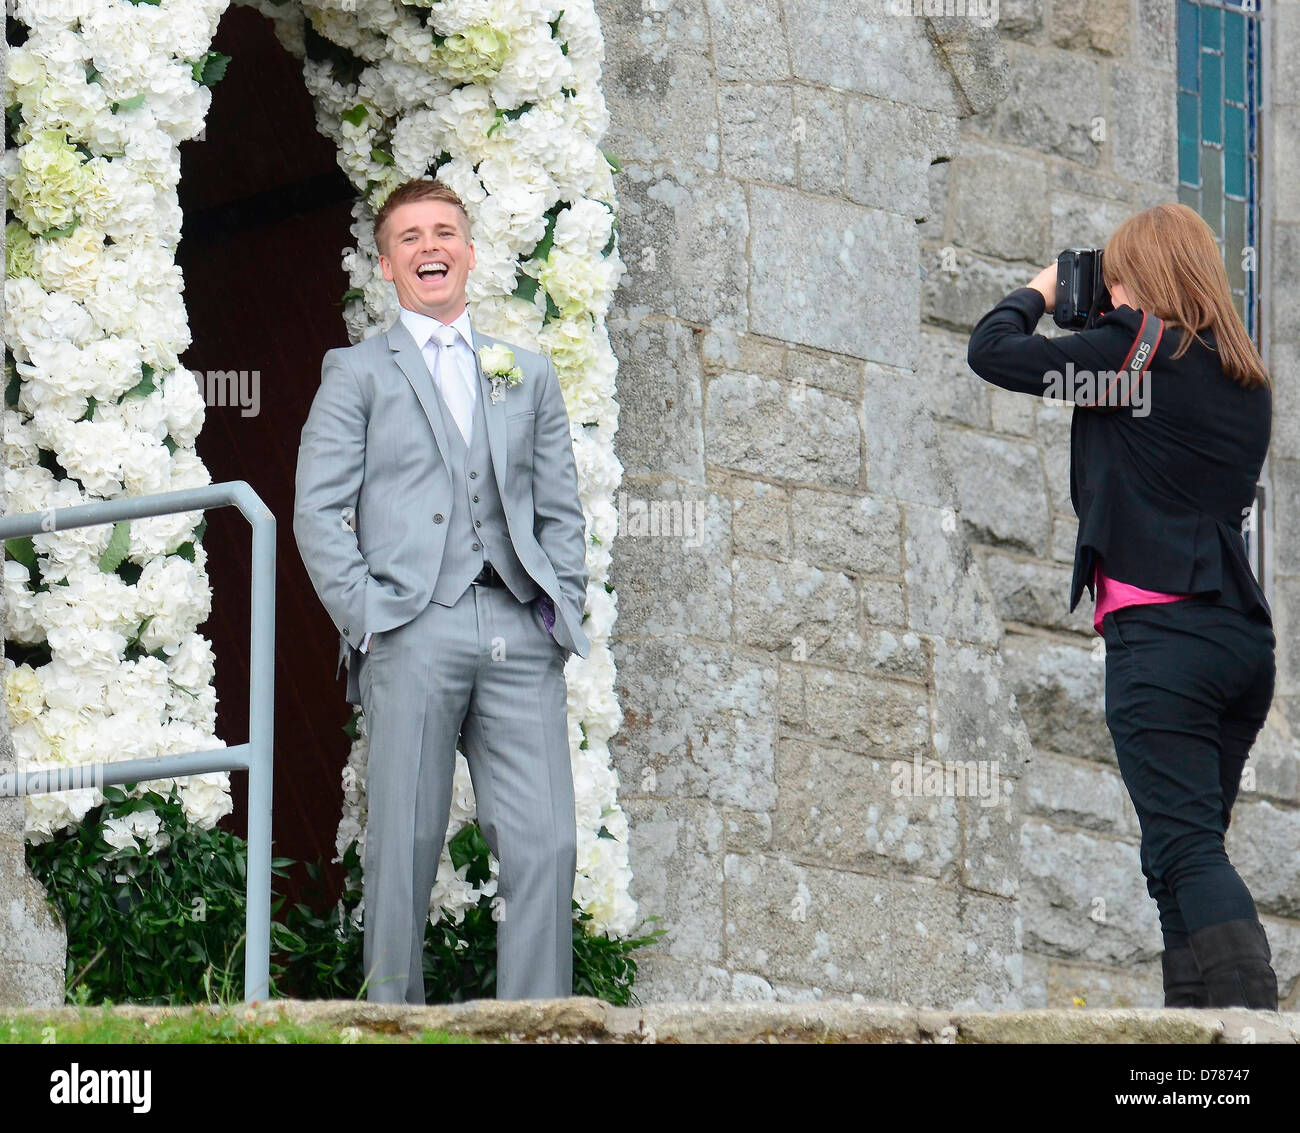 Brian Ormond Le Mariage de Pippa O'Connor de présentatrice TV Brian Ormond tenue à l'église St. Patrick dans la région de Wicklow Dublin, Irlande Banque D'Images